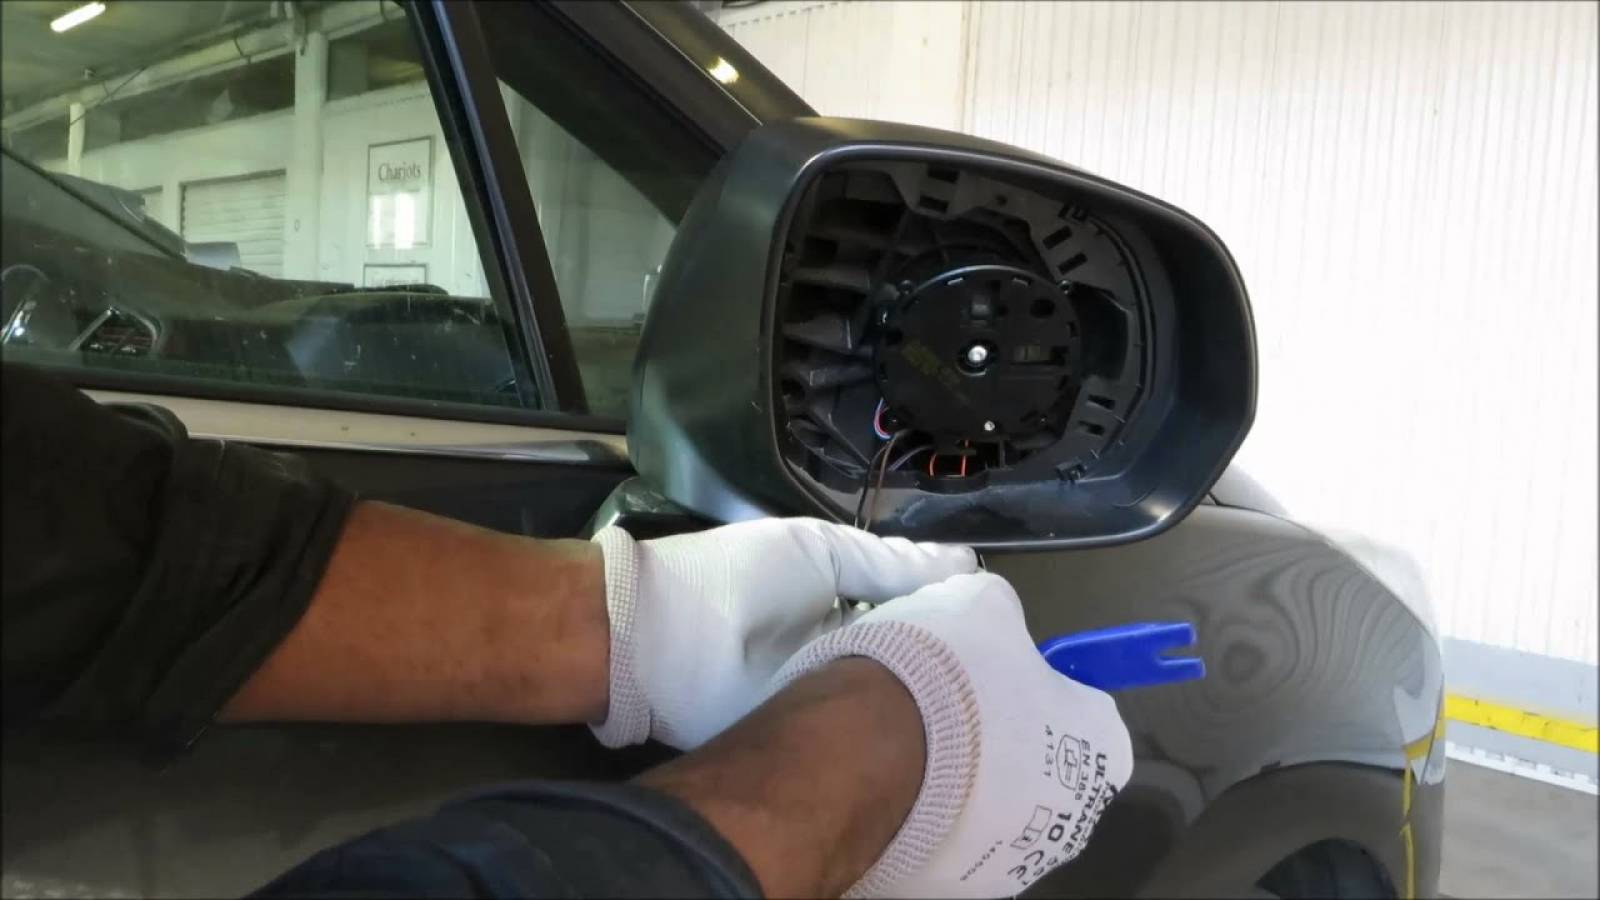 Comment remplacer le rétroviseur intérieur d'une voiture? GarageLibre